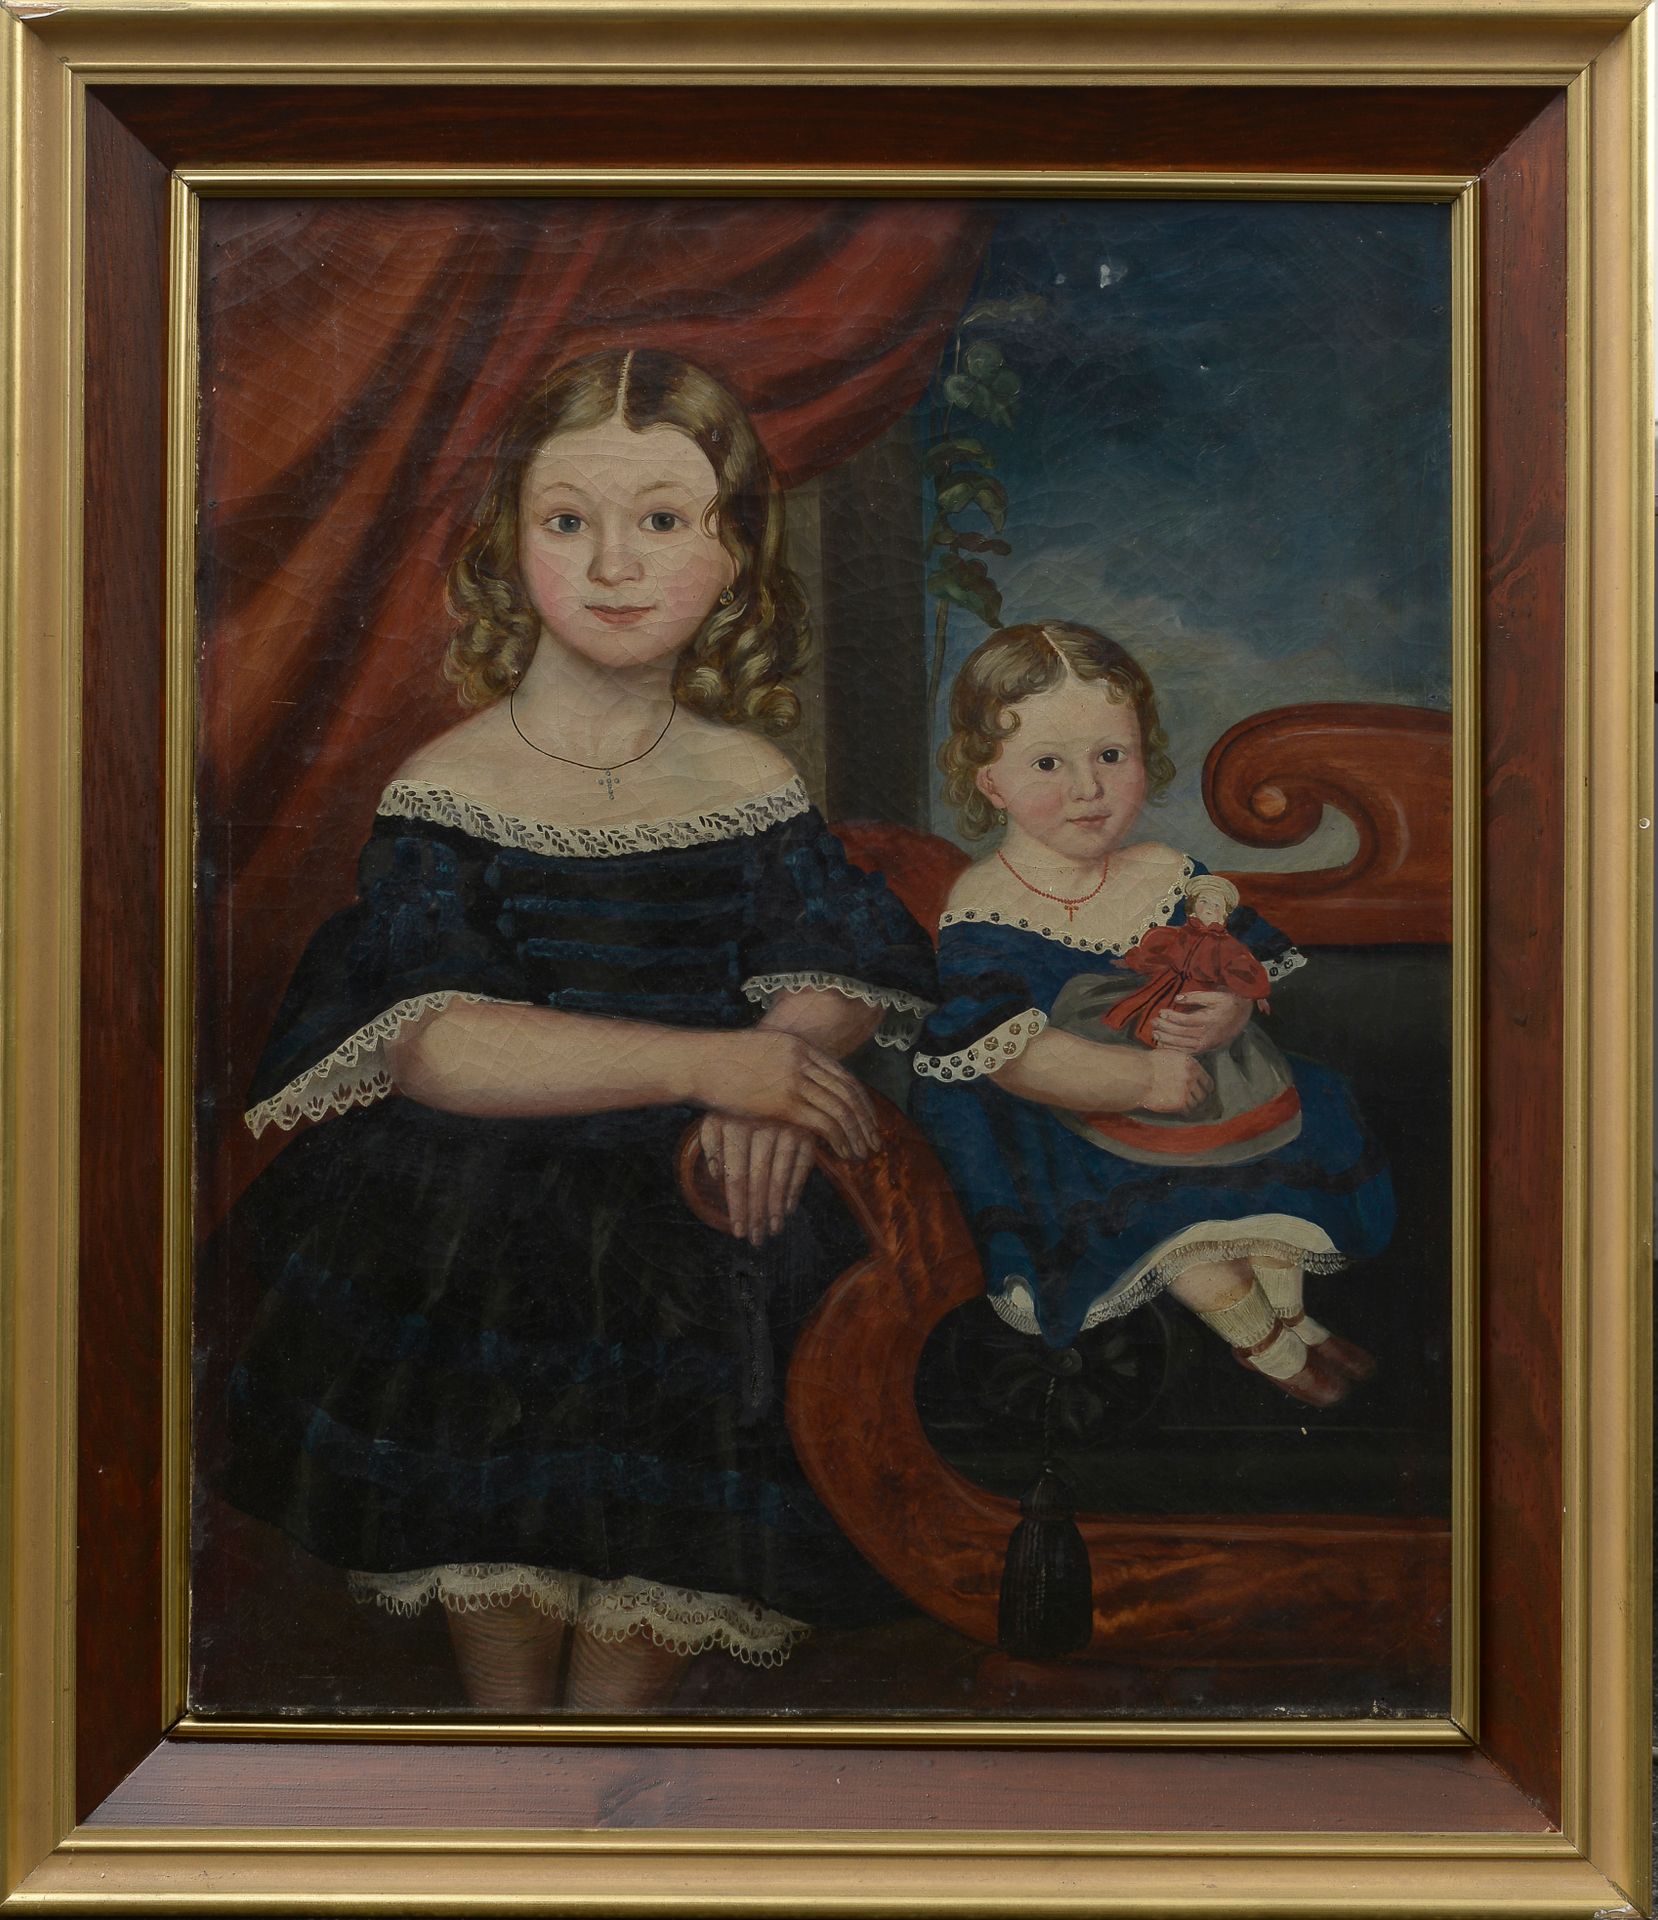 Null 19世纪末的学校。 

两个女孩的肖像。

布面油画（损坏）。 

高度：76.5厘米76,5 - 宽度: 64 cm